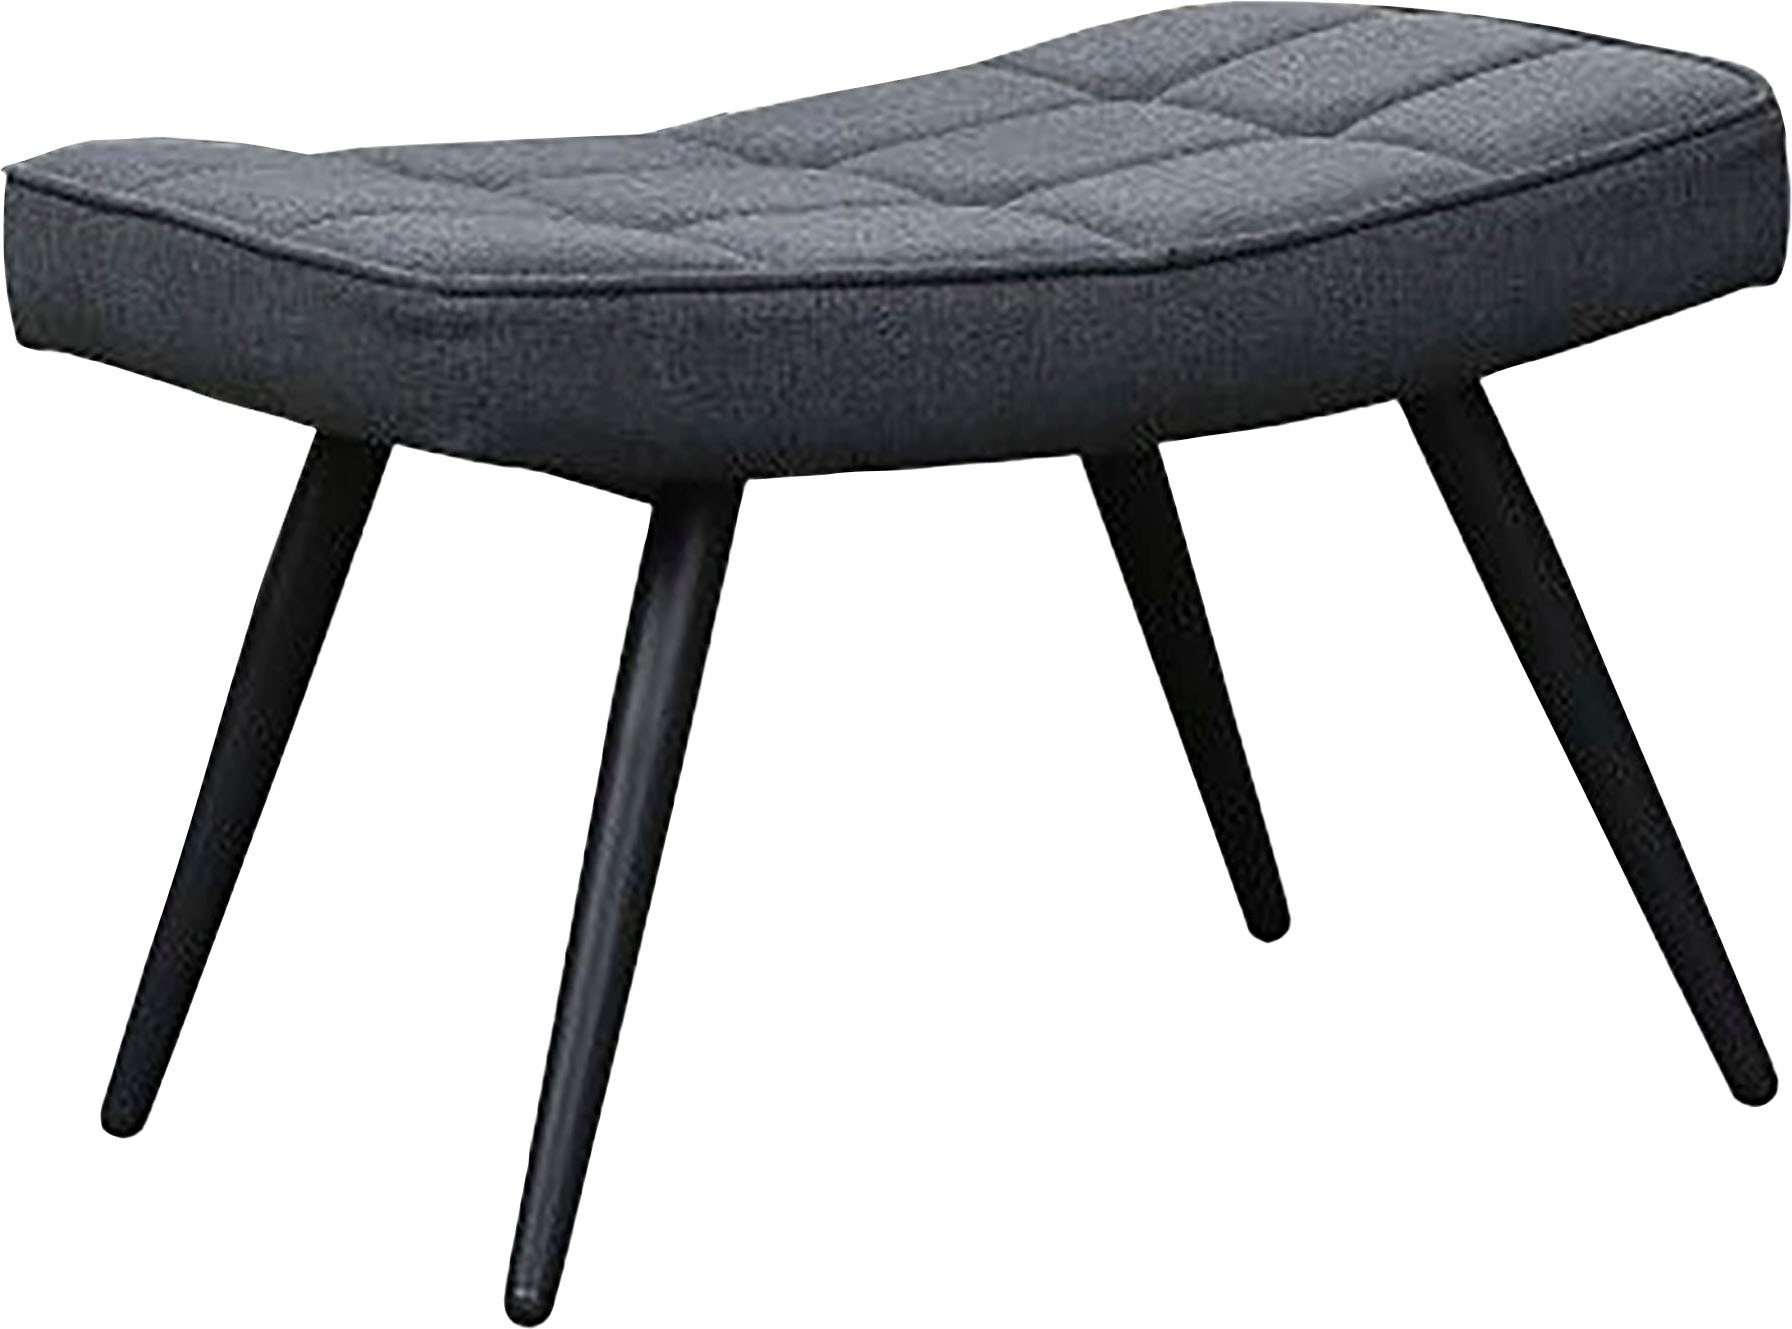 Cord, ohne schwarz oder (1-St), Webstoff mit Samt Uta Hocker, byLIVING schwarz | oder in Sessel wahlweise